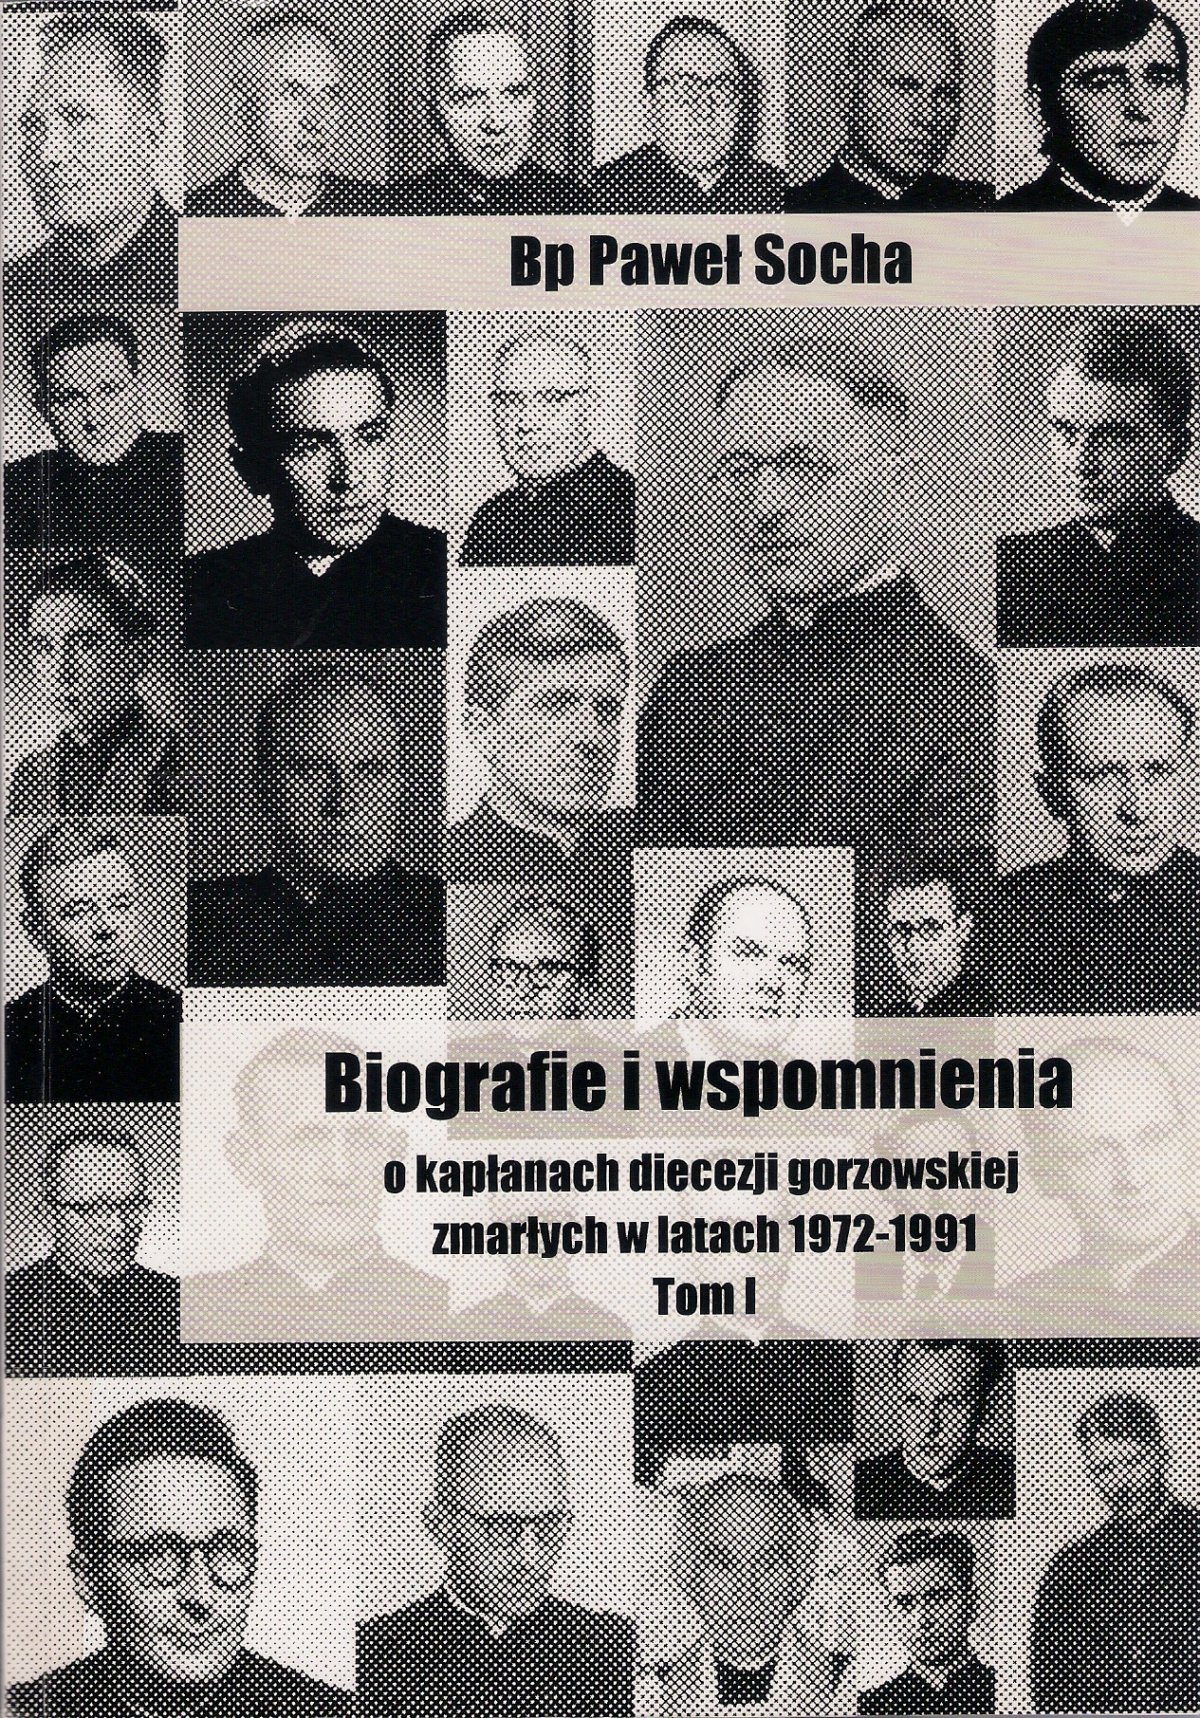 Trzy tomy liczą ks. bp. Pawła Sochy ,,Biografie i wspomnienia o kapłanach diecezji gorzowskiej”, którzy zmarli w latach 1972-2015.